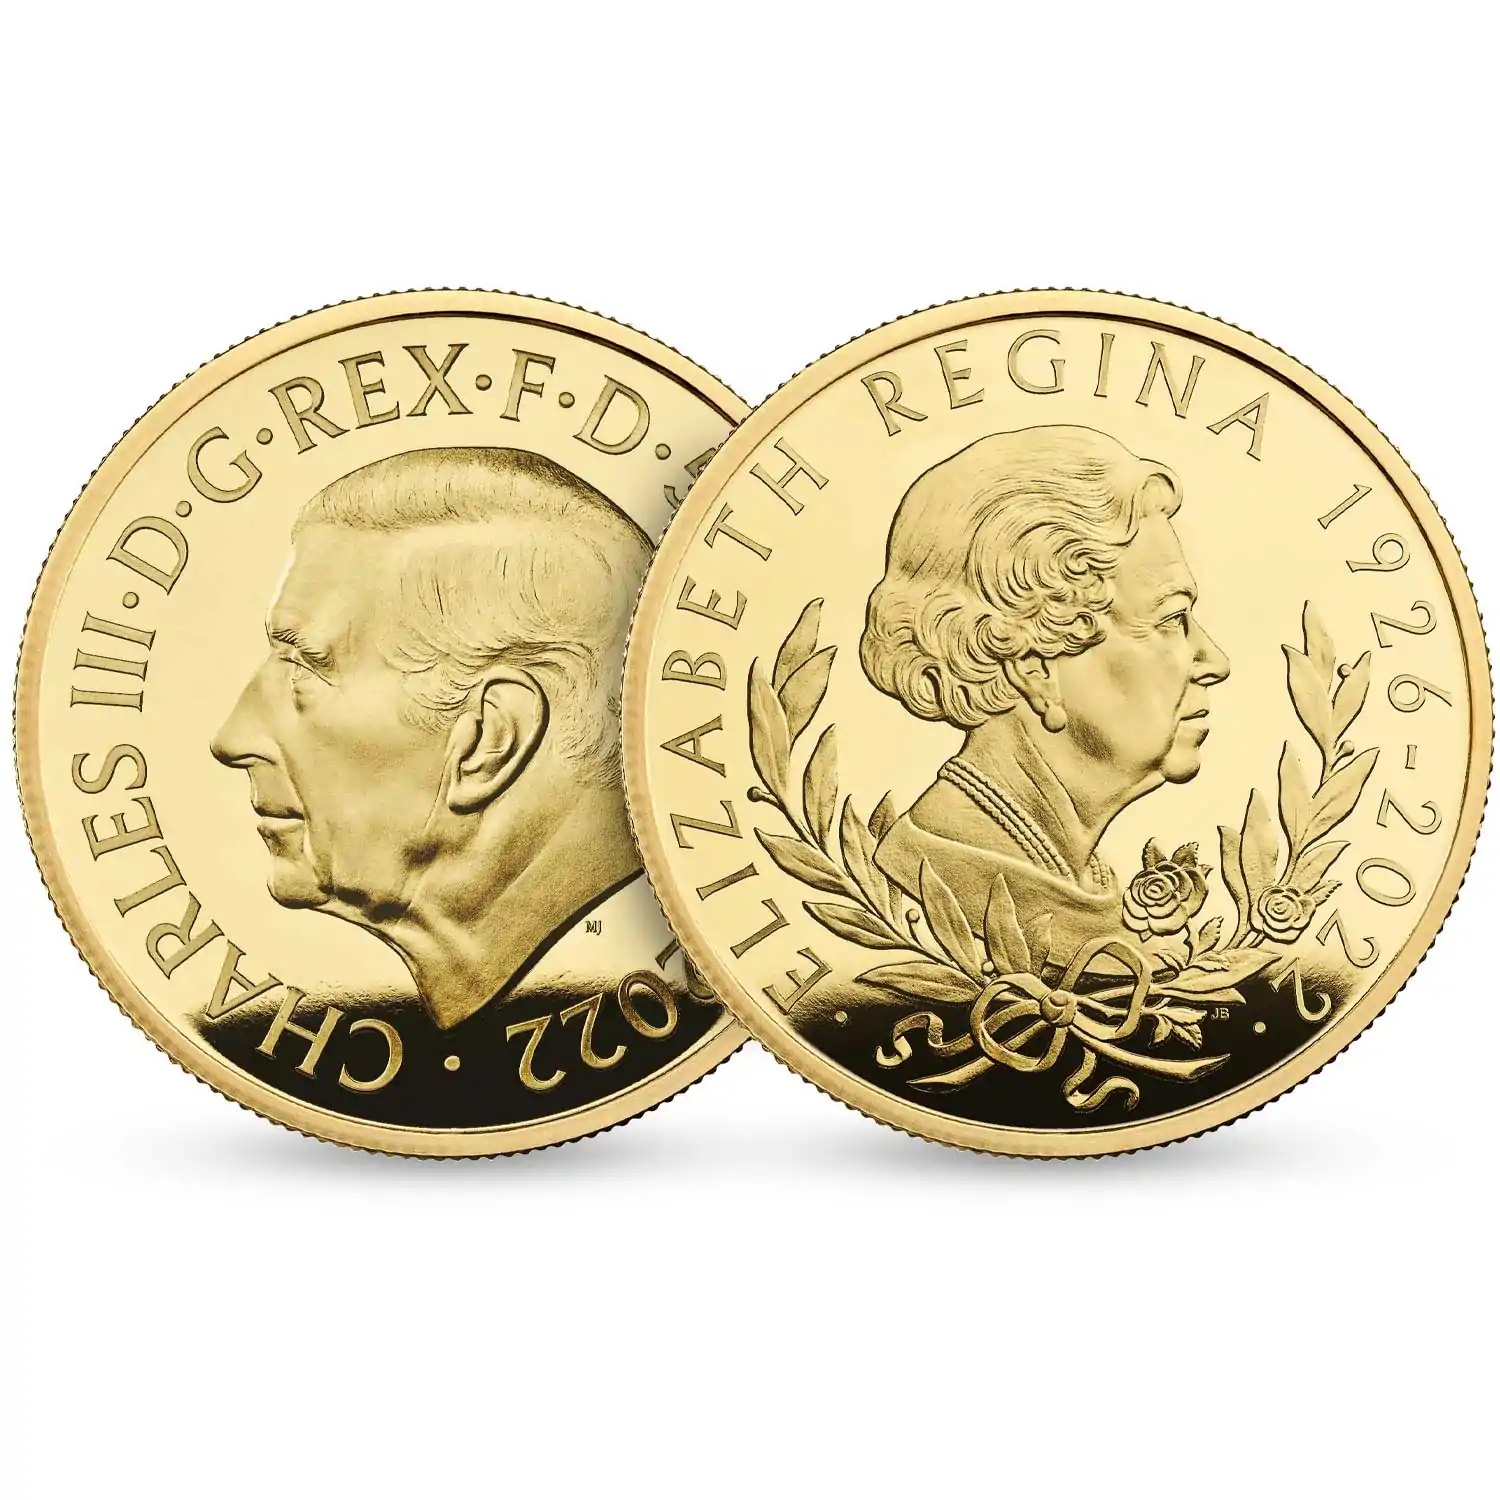 Her Majesty Queen Elizabeth II 2022 1 uncja Proof  - złota moneta